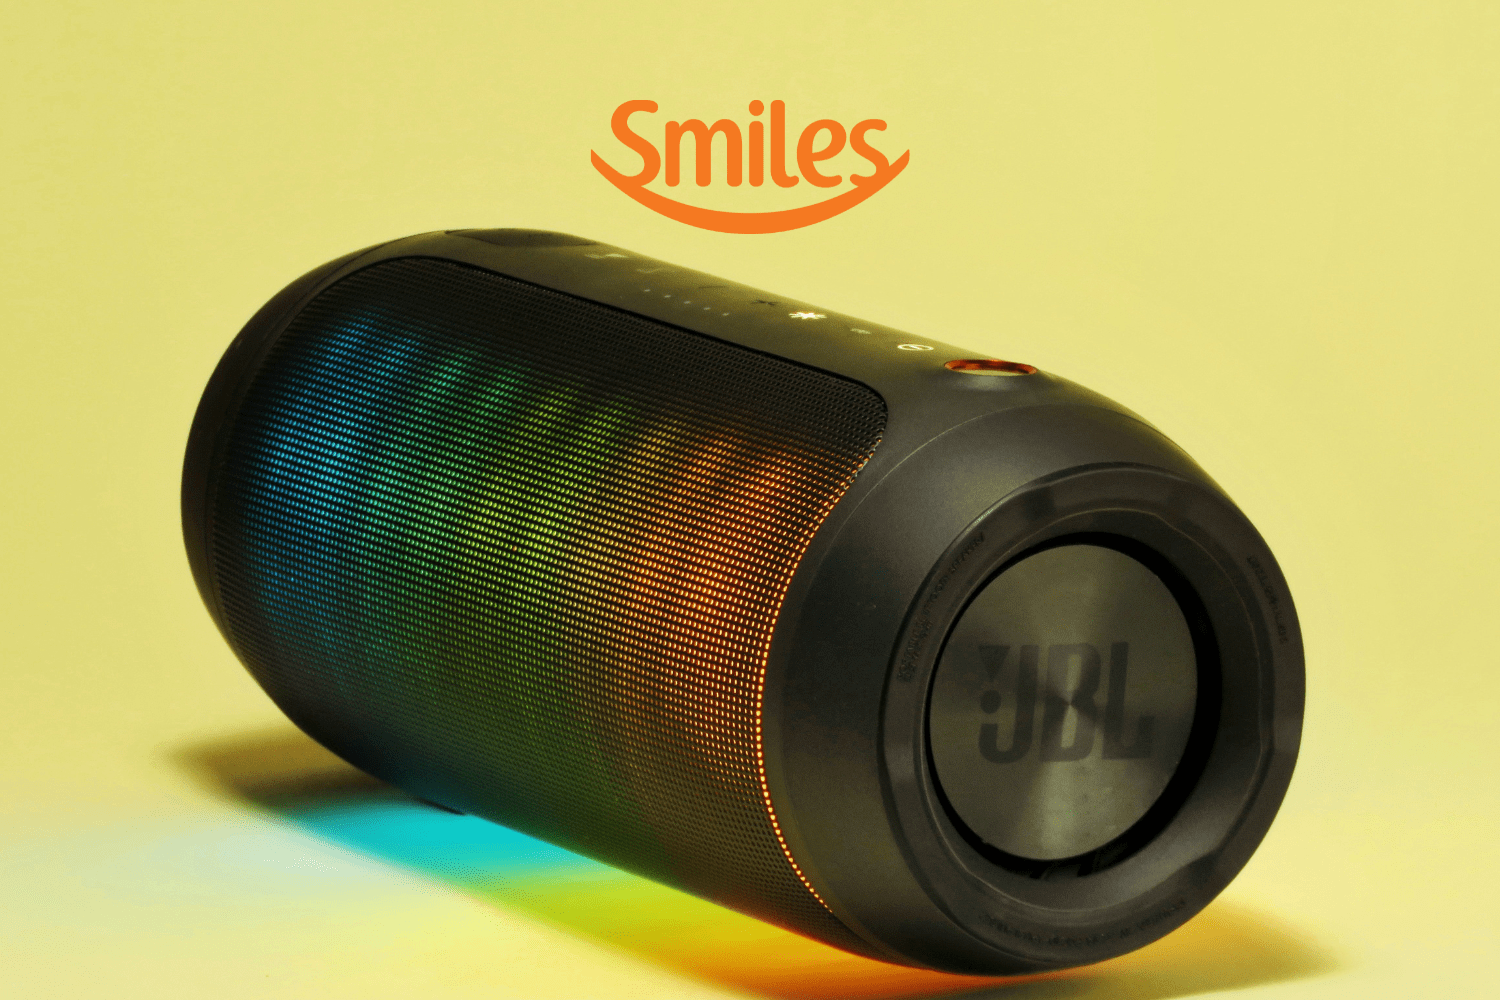 caixa de som JBL com logo Smiles Pontos Smiles